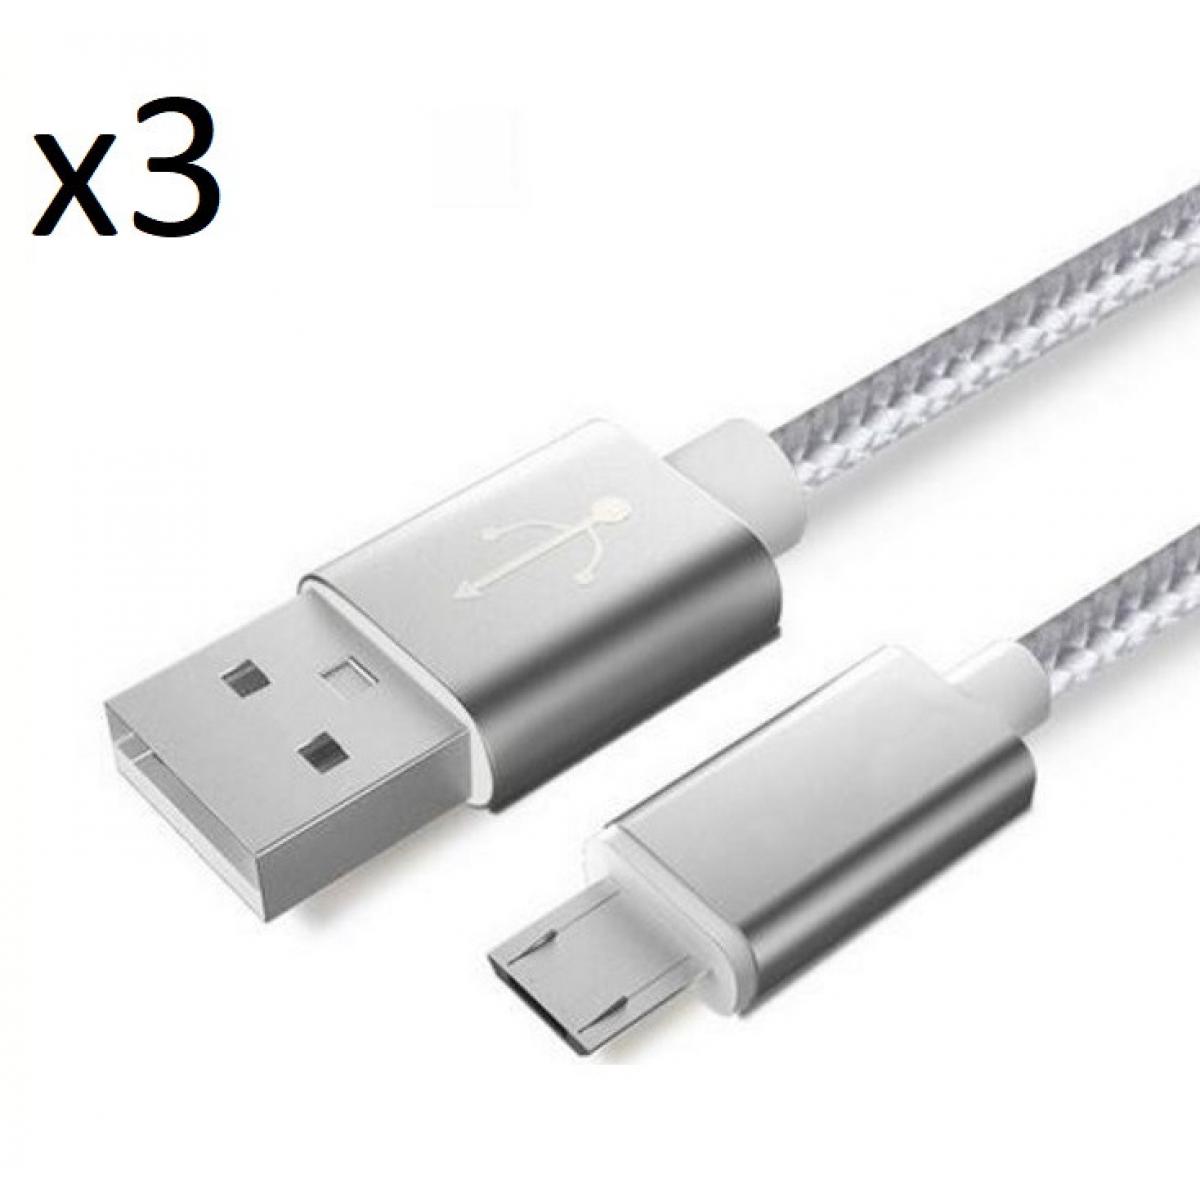 Shot - Pack de 3 Cables Metal Nylon Micro USB pour Ultimate Ears WONDERBOOM 2 Smartphone Android Chargeur (ARGENT) - Chargeur secteur téléphone